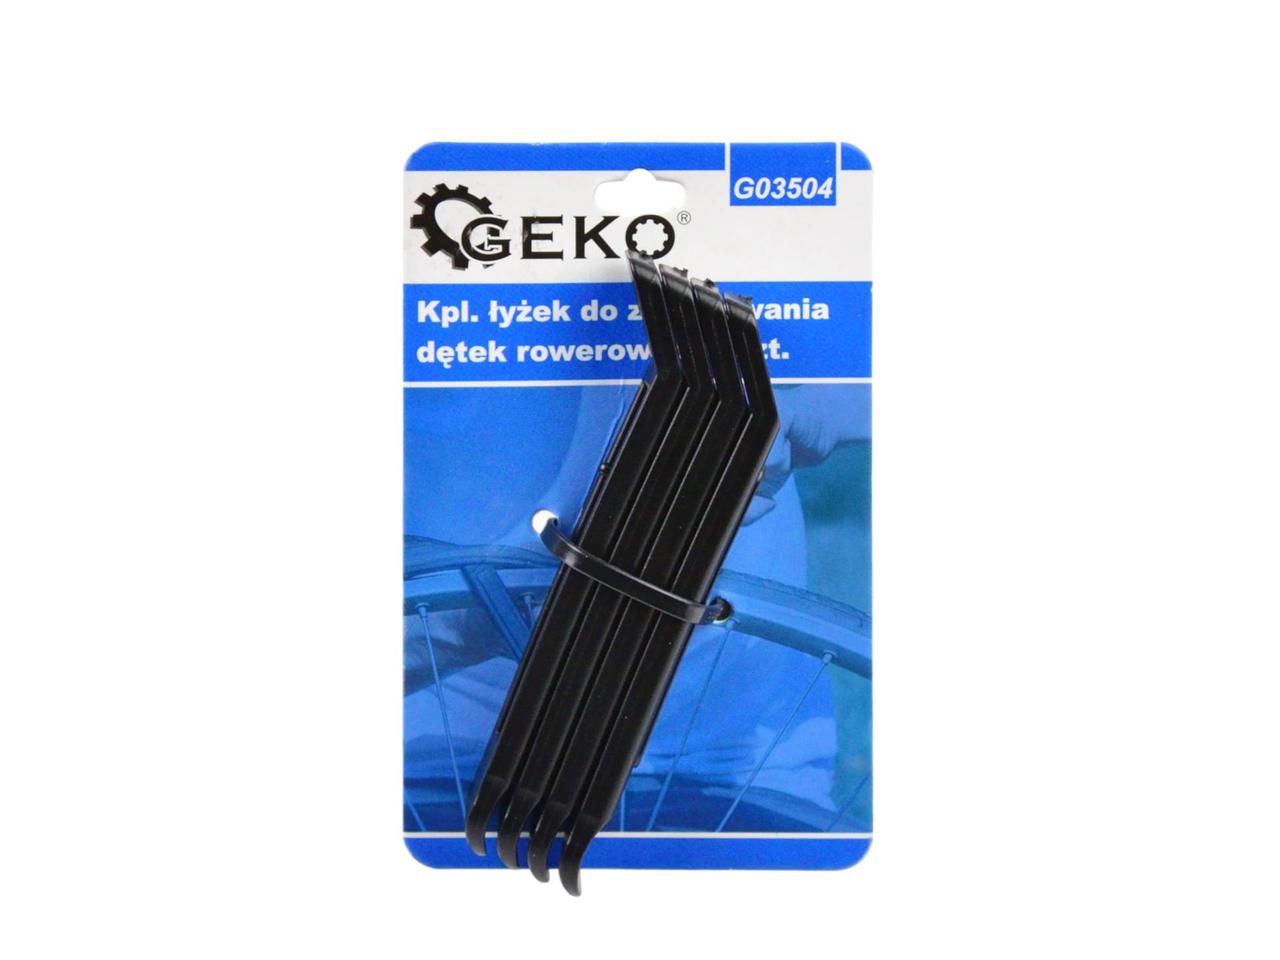 G03504 Набор ложек пластиковых для демонтажа шин и камер велосипедных (4 предмета), GEKO, 5901477169328 (CN)